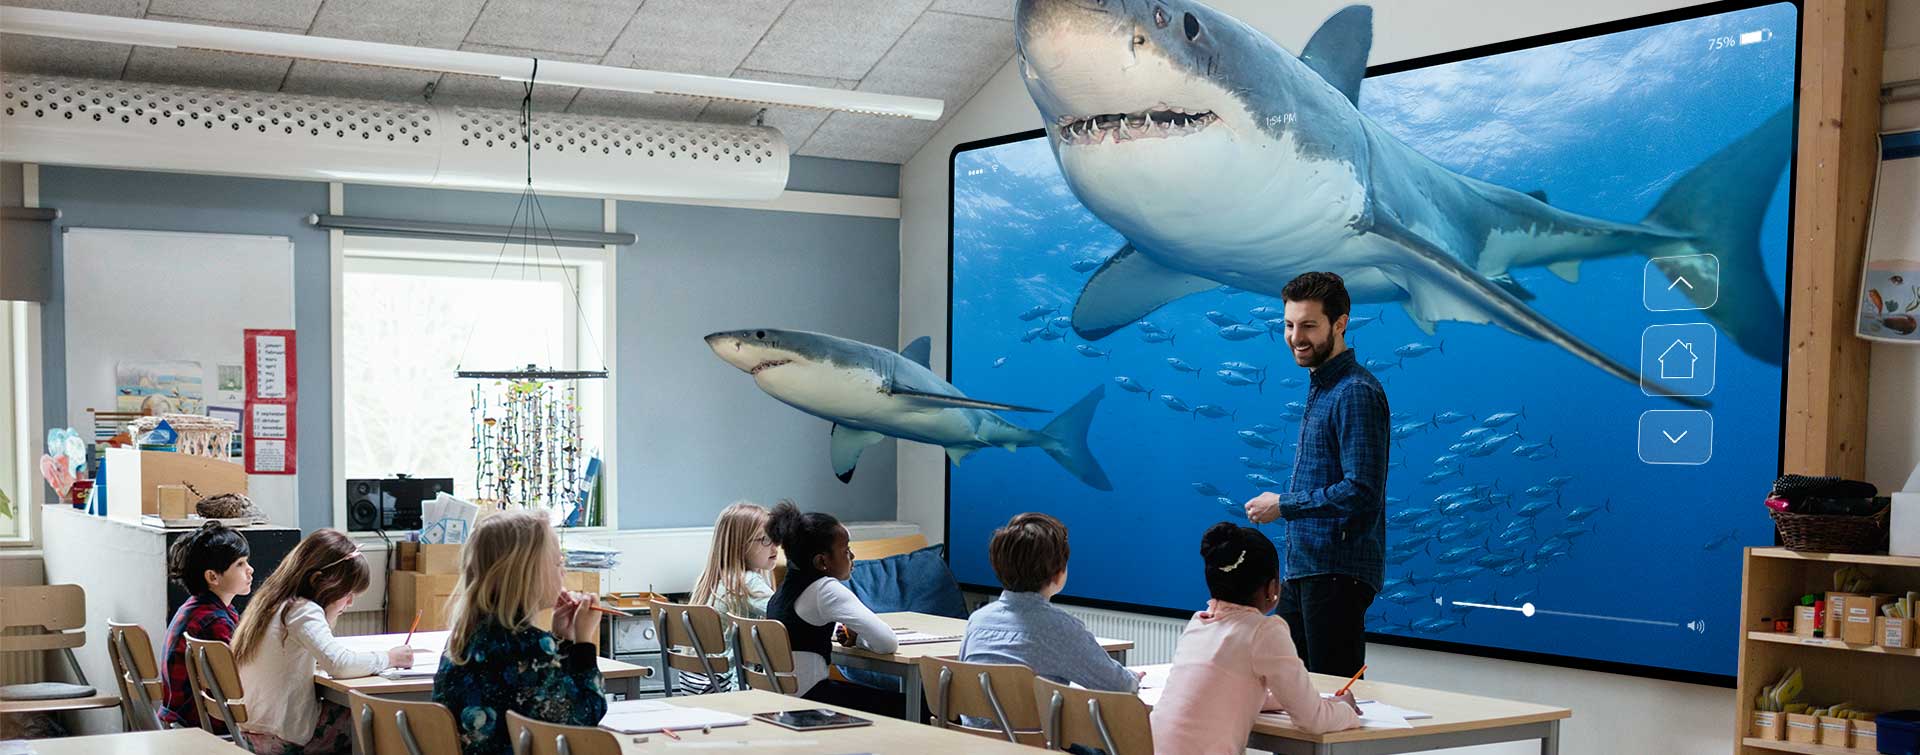 학생과 교사가 함께 하는 상어 가상 현실 교육 